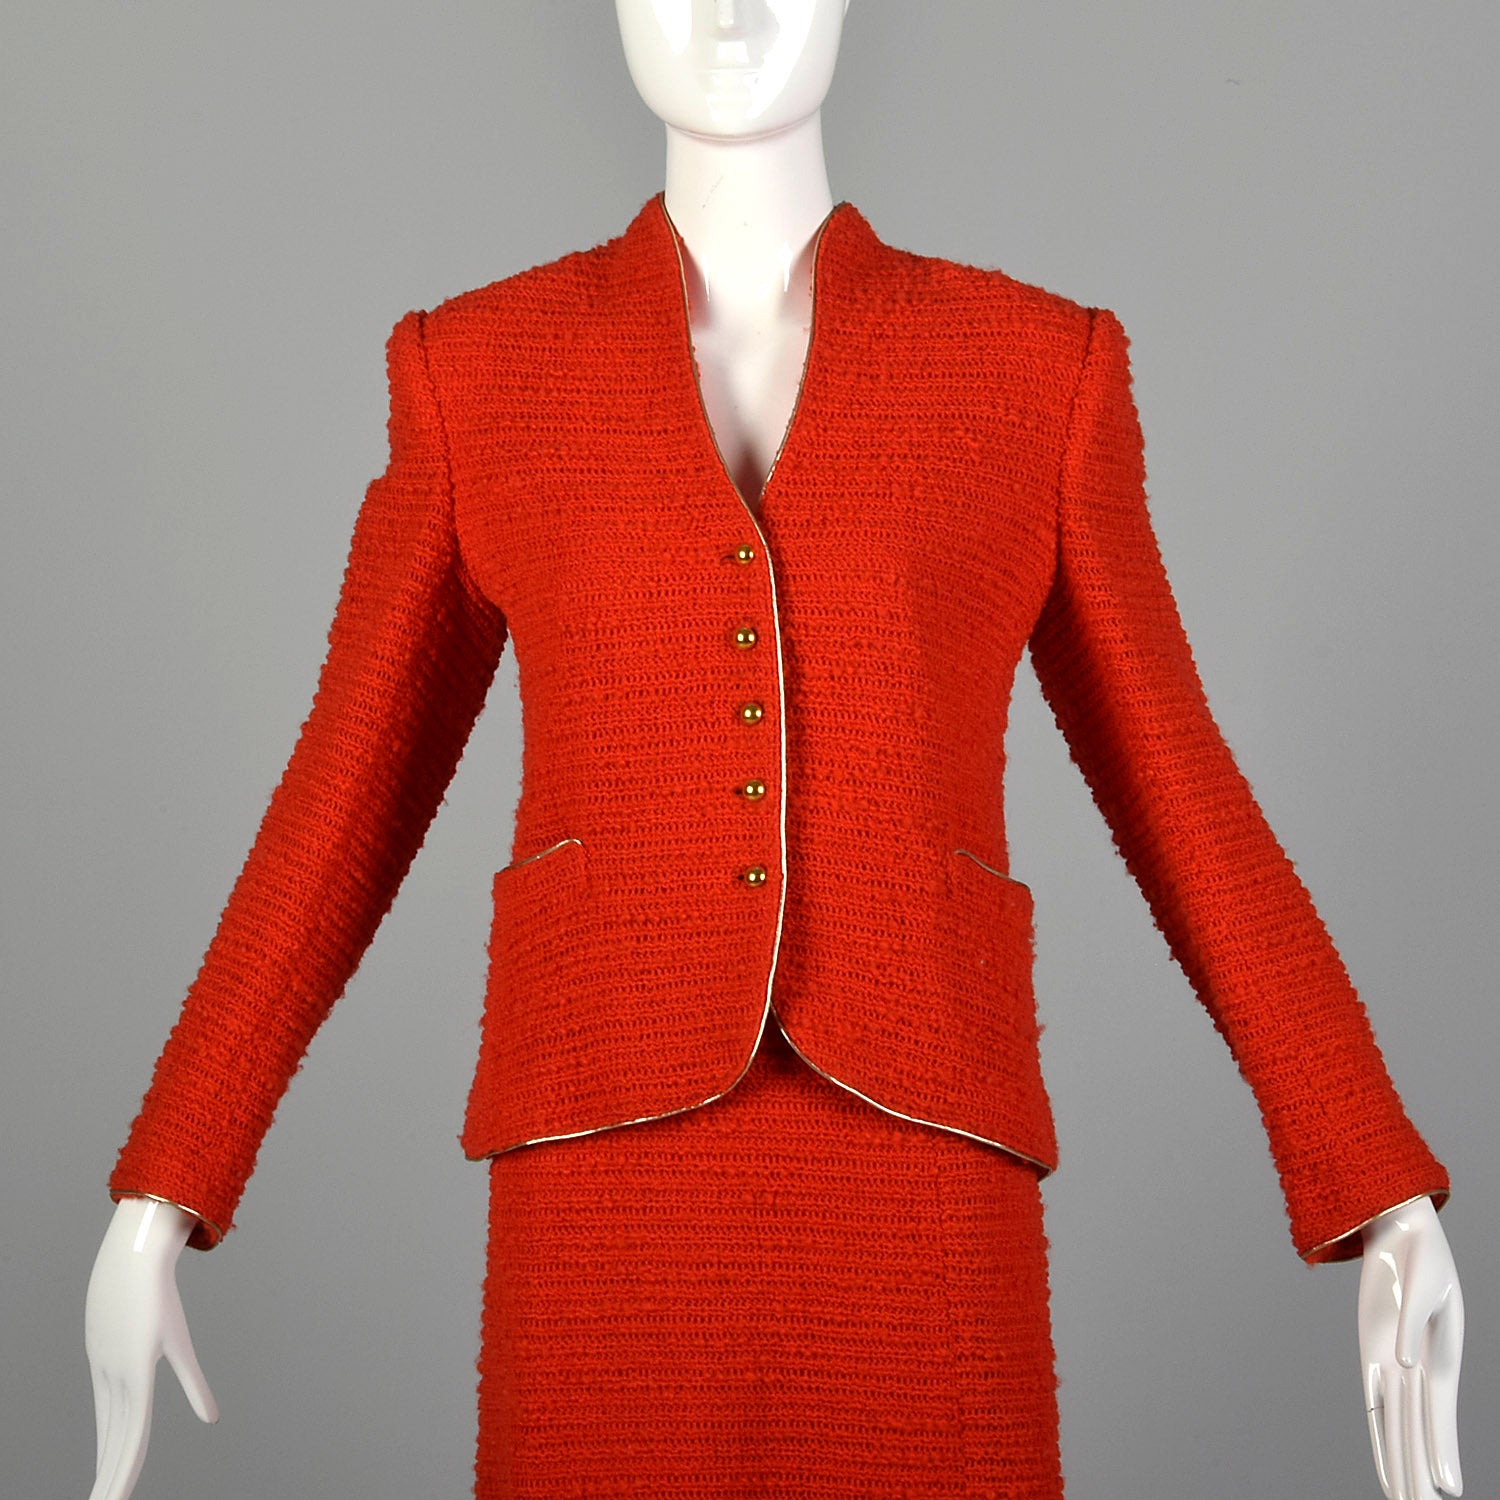 Medium Beni Salvadori Sara Fredericks 1970s Red Open Knit Skirt Suit